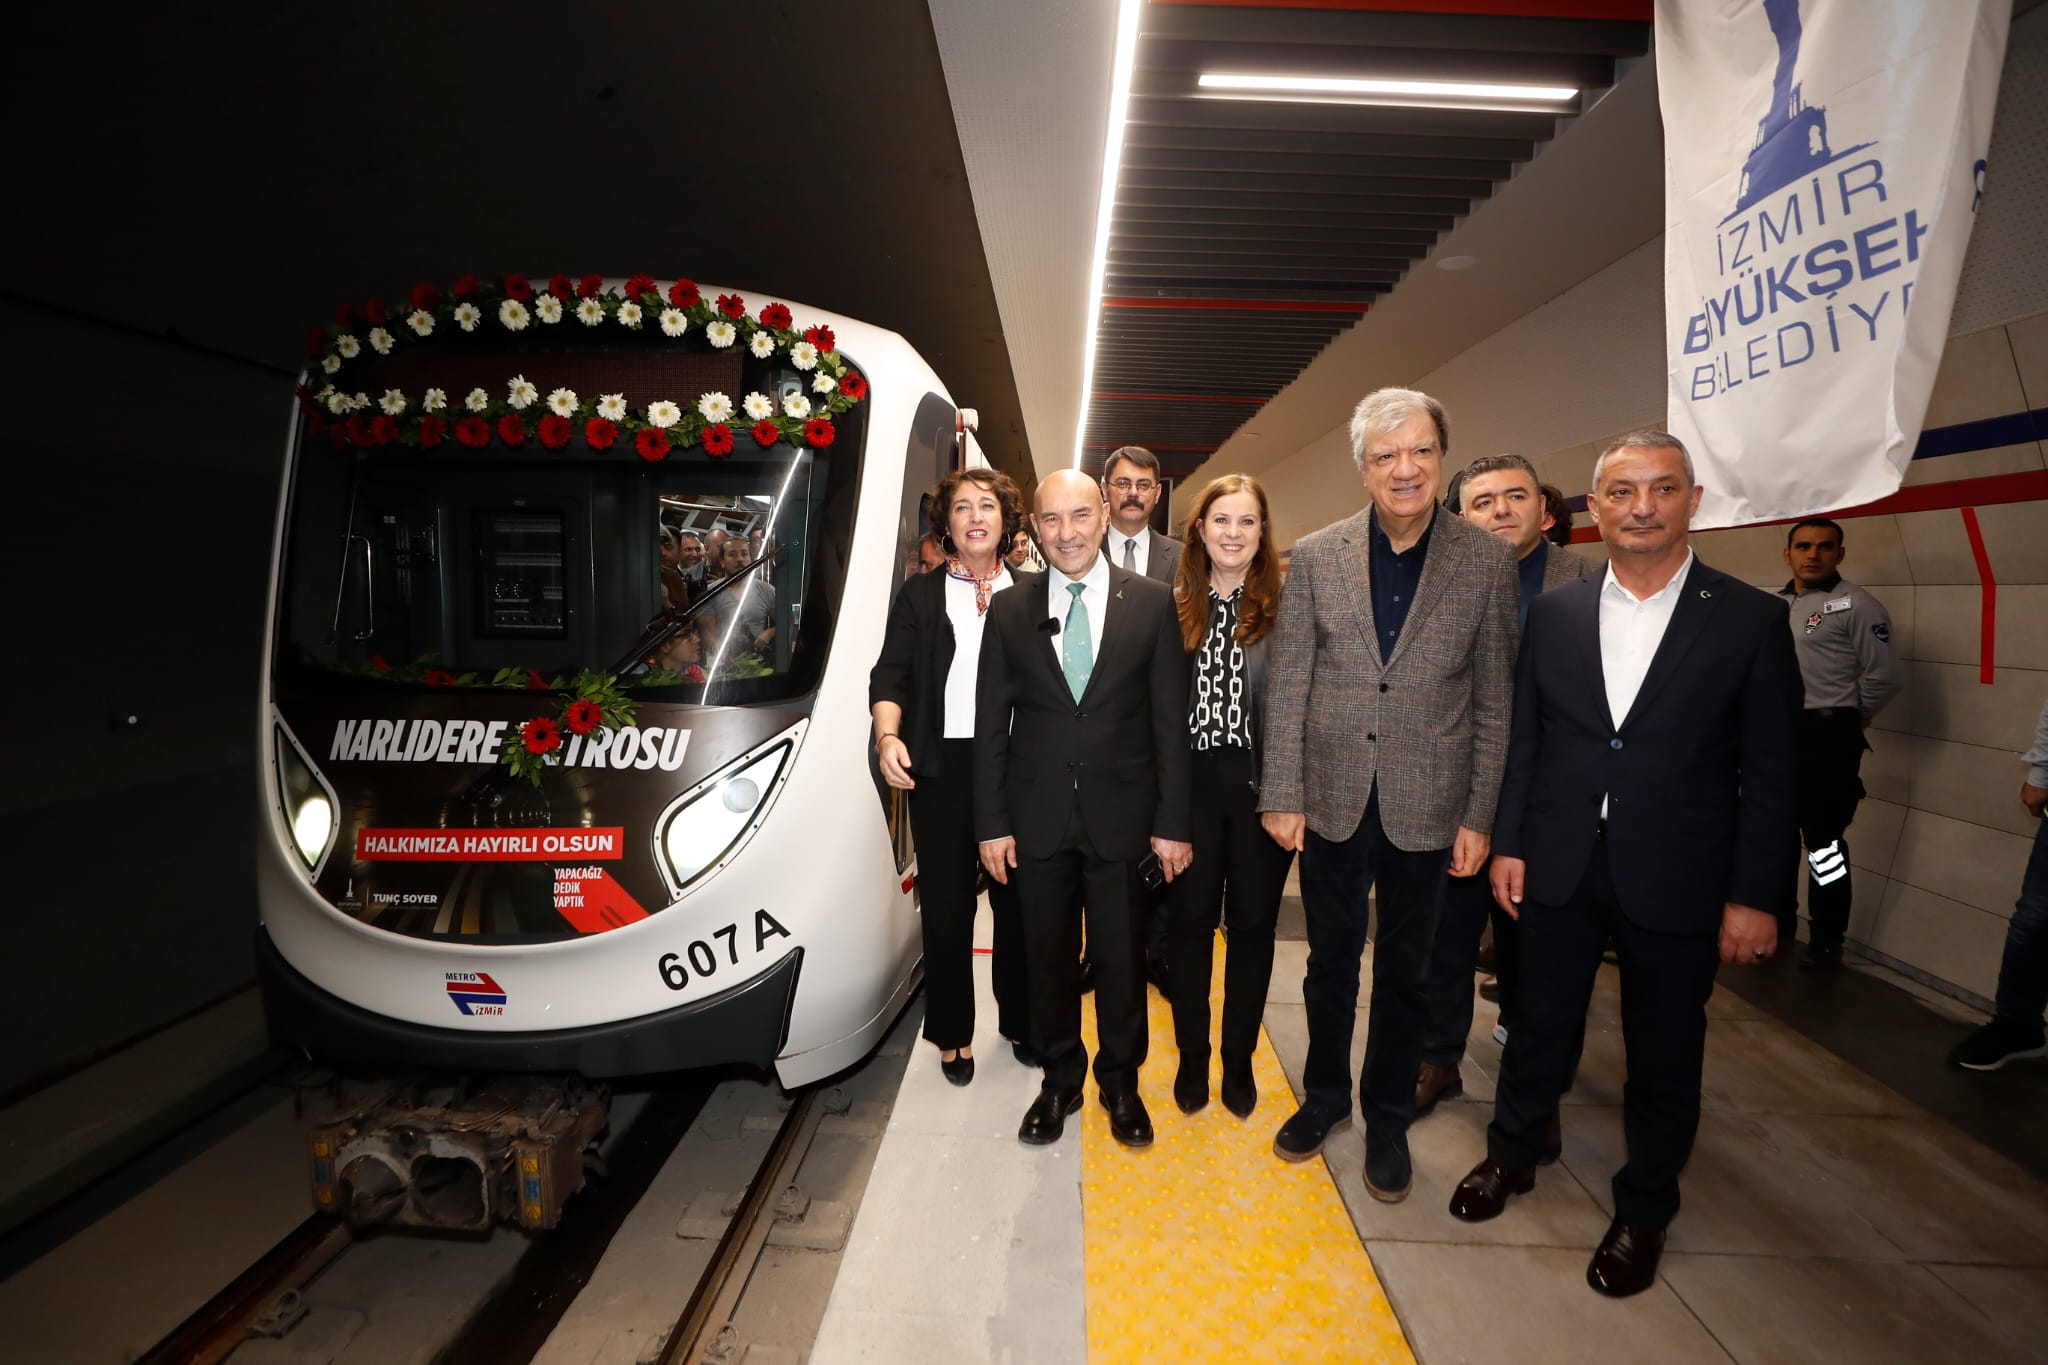 İzmir için büyük gün! Narlıdere Metrosu açıldı